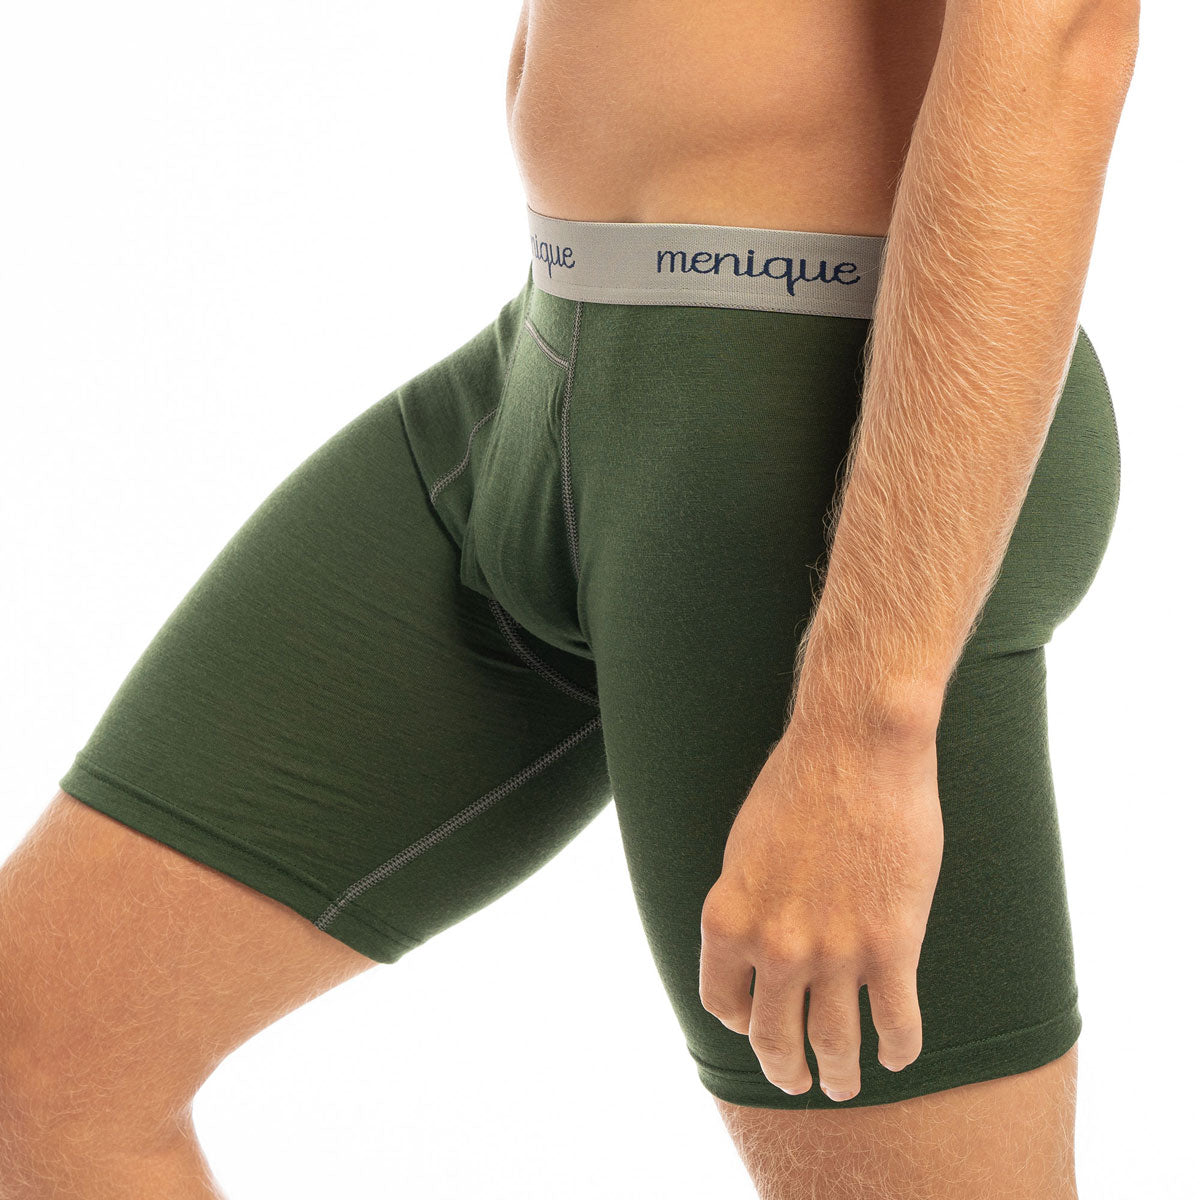 Mens Designer Underwear Boxer Briefs, Green and Black